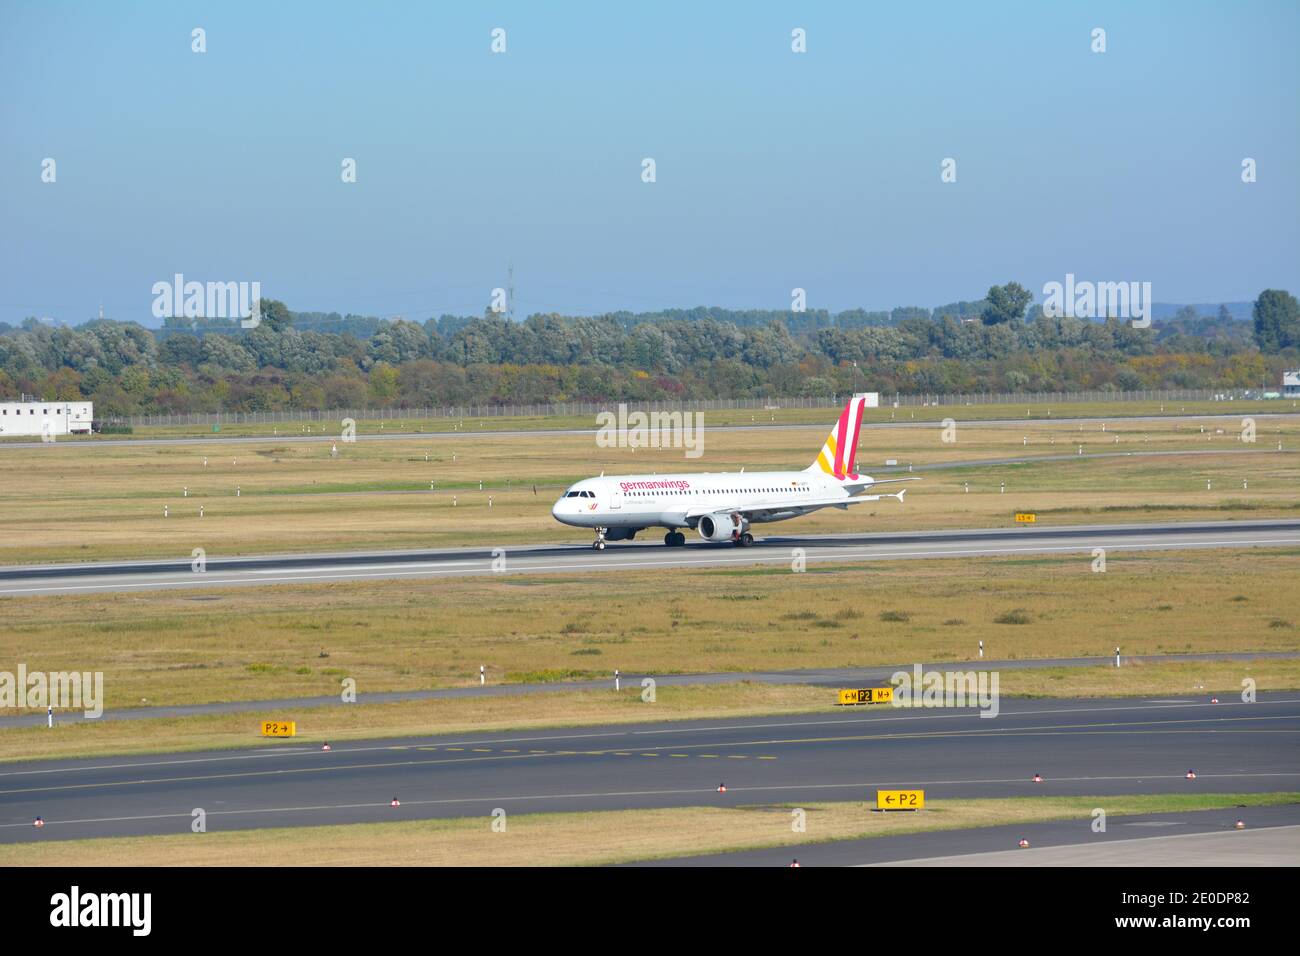 Germanwings Airbus (Plane / Flightplane) on Runway at DUS international Airport, Duesseldorf, Germany. Stock Photo